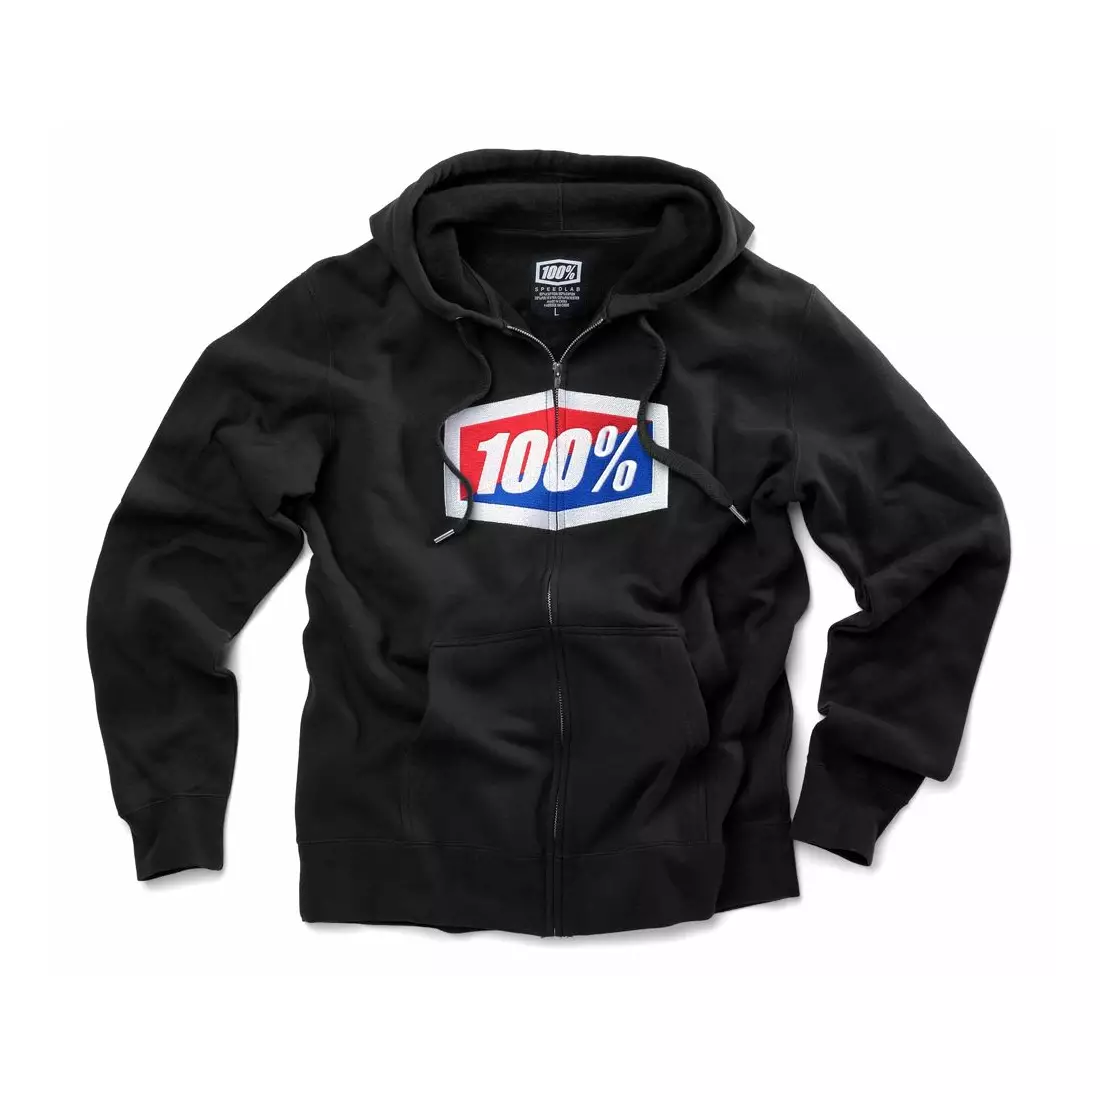 100% Herren Sport Sweatshirt official hooded zip black STO-36005-001-10